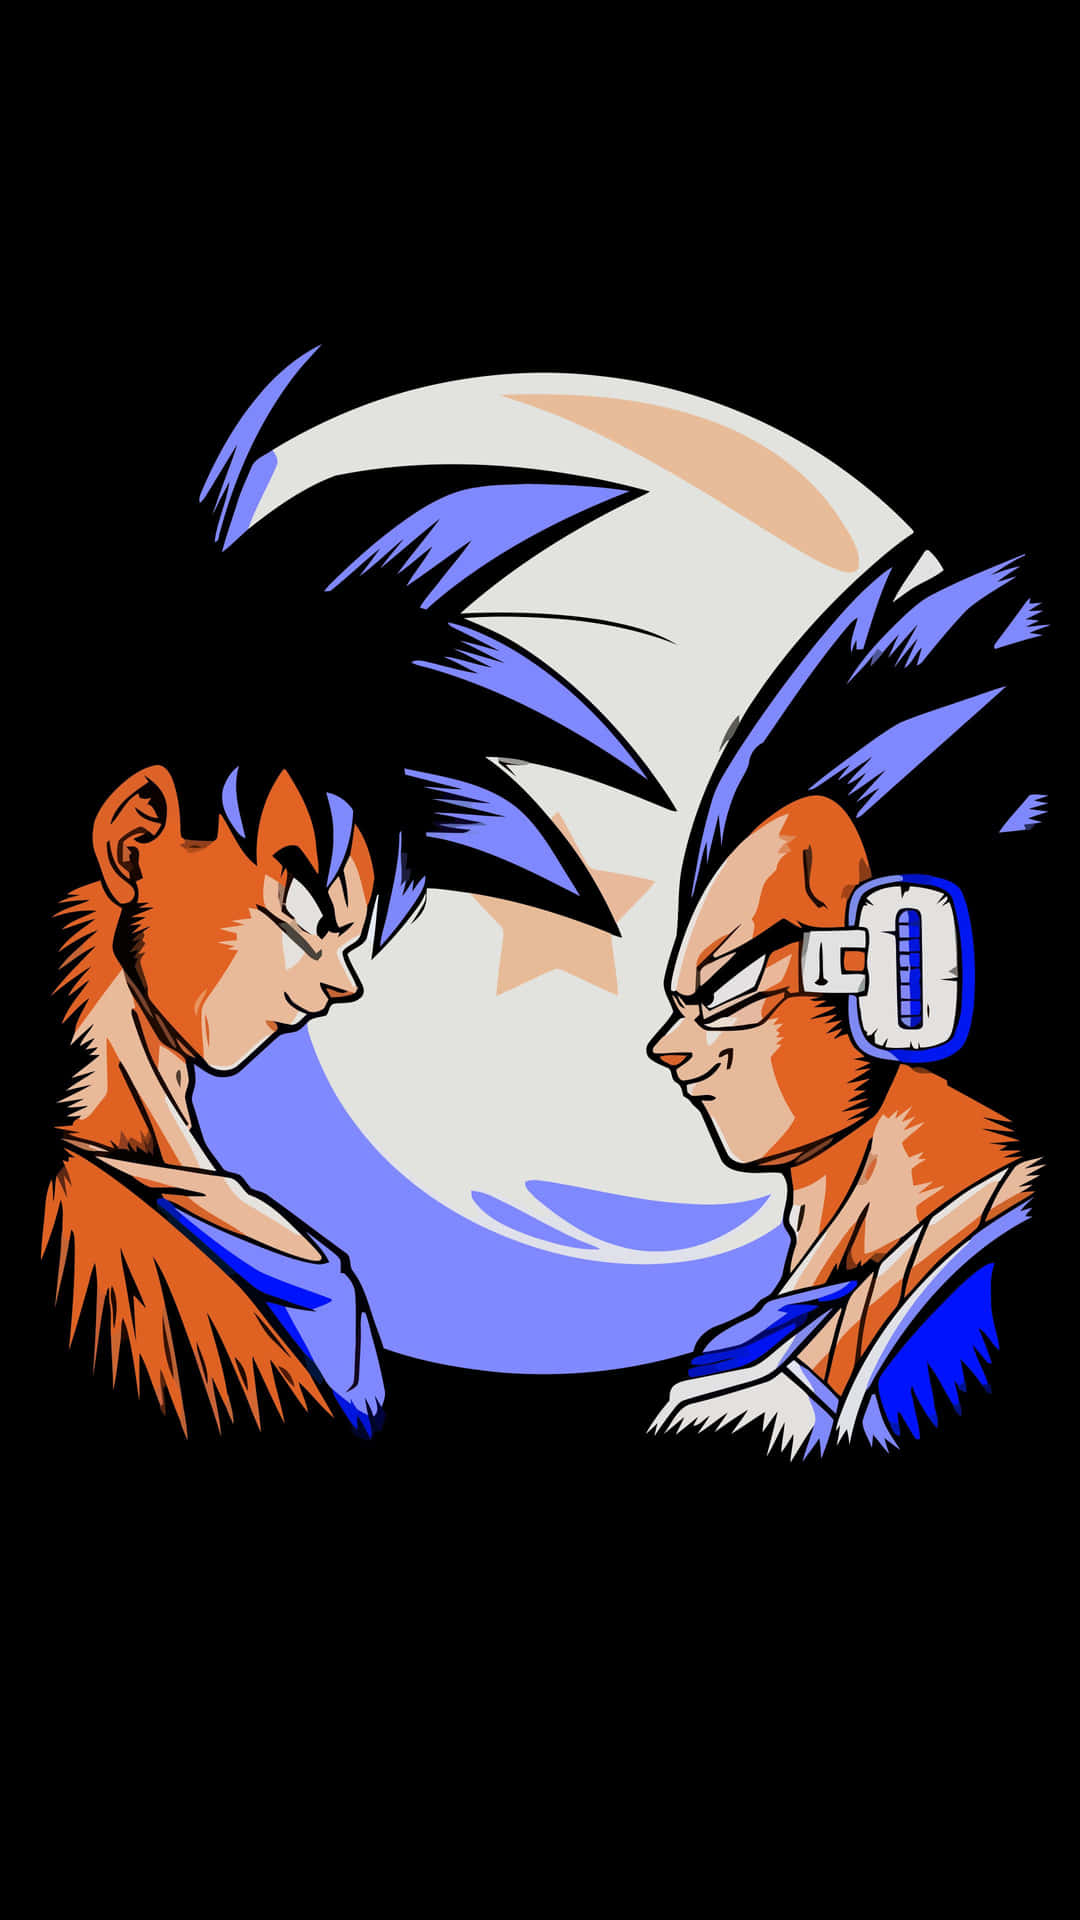 Schauensie Die Neuesten Folgen Von Dragon Ball Super Auf Ihrem Goku & Vegeta Iphone-hintergrund An. Wallpaper